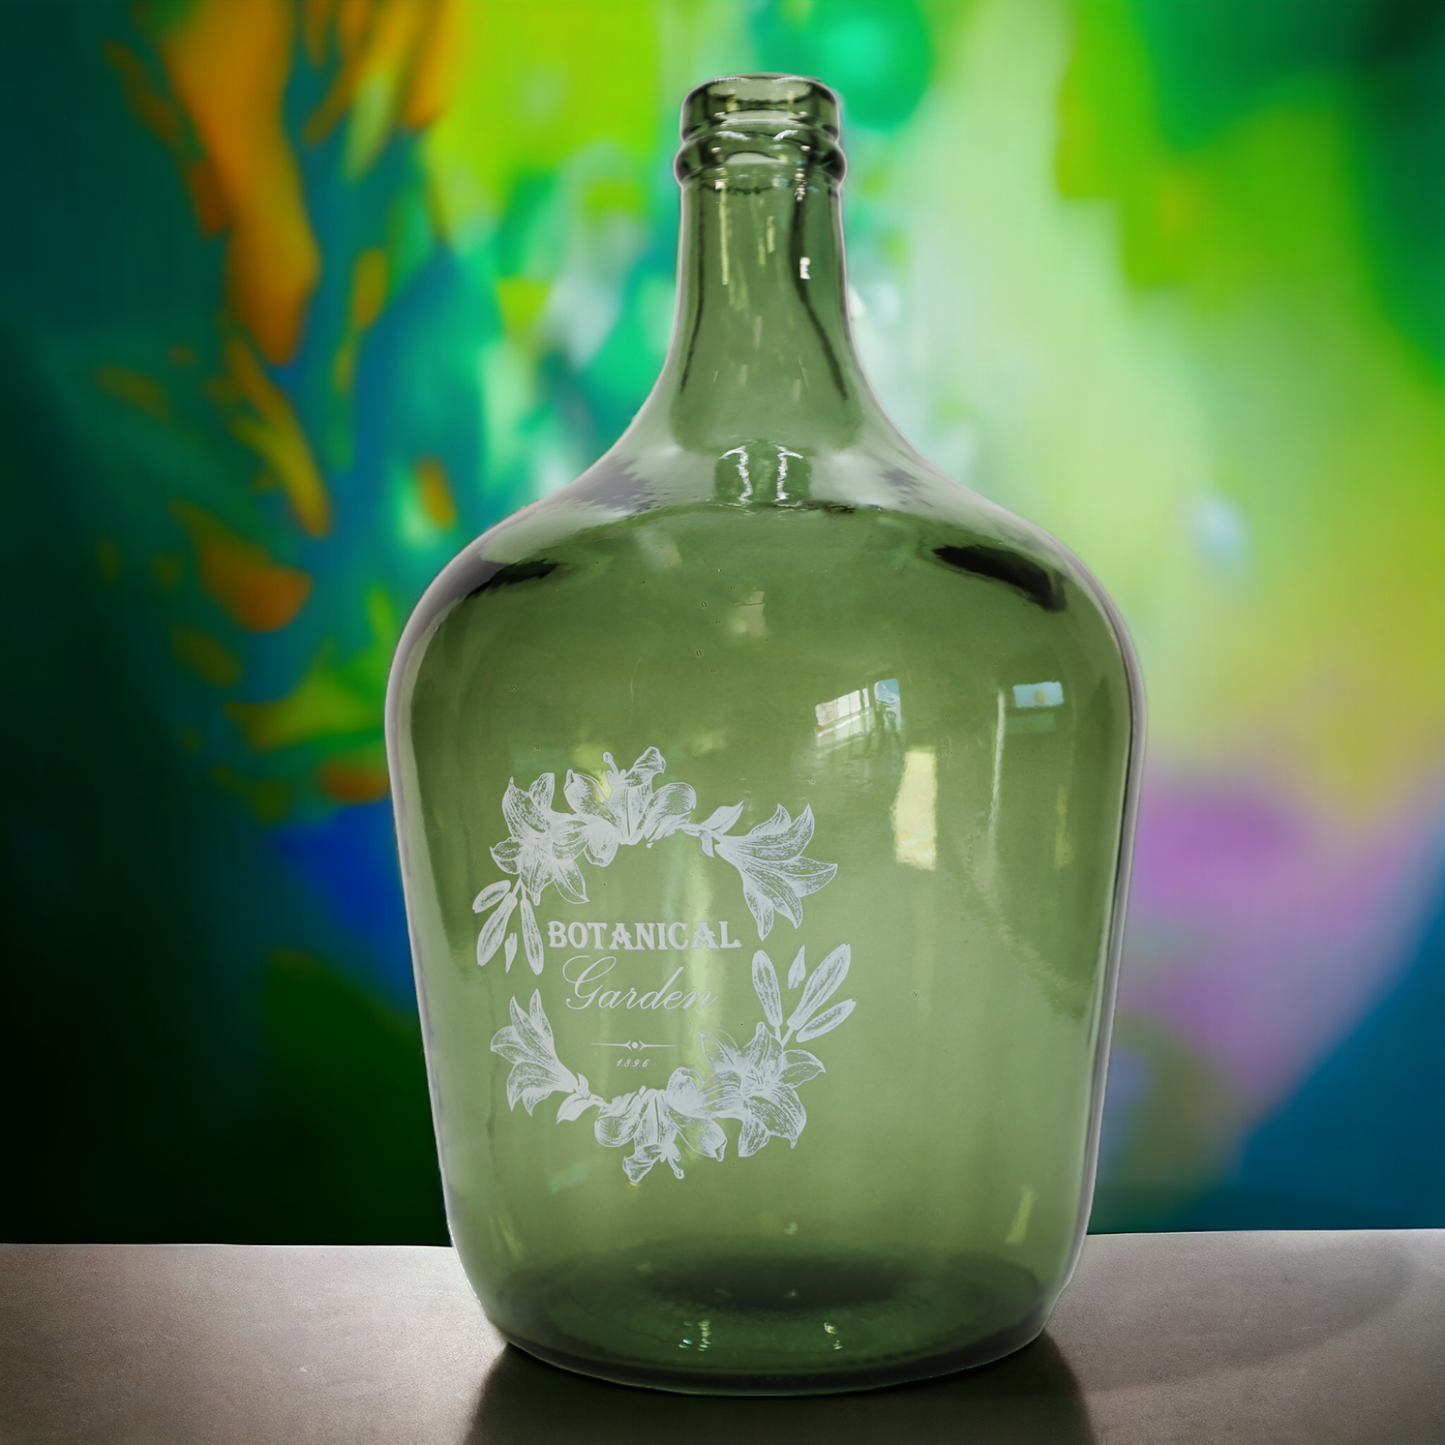 Vase - Flaschenkaraffe "Botanical" 34 l grün mit Aufdruck - 56 cm